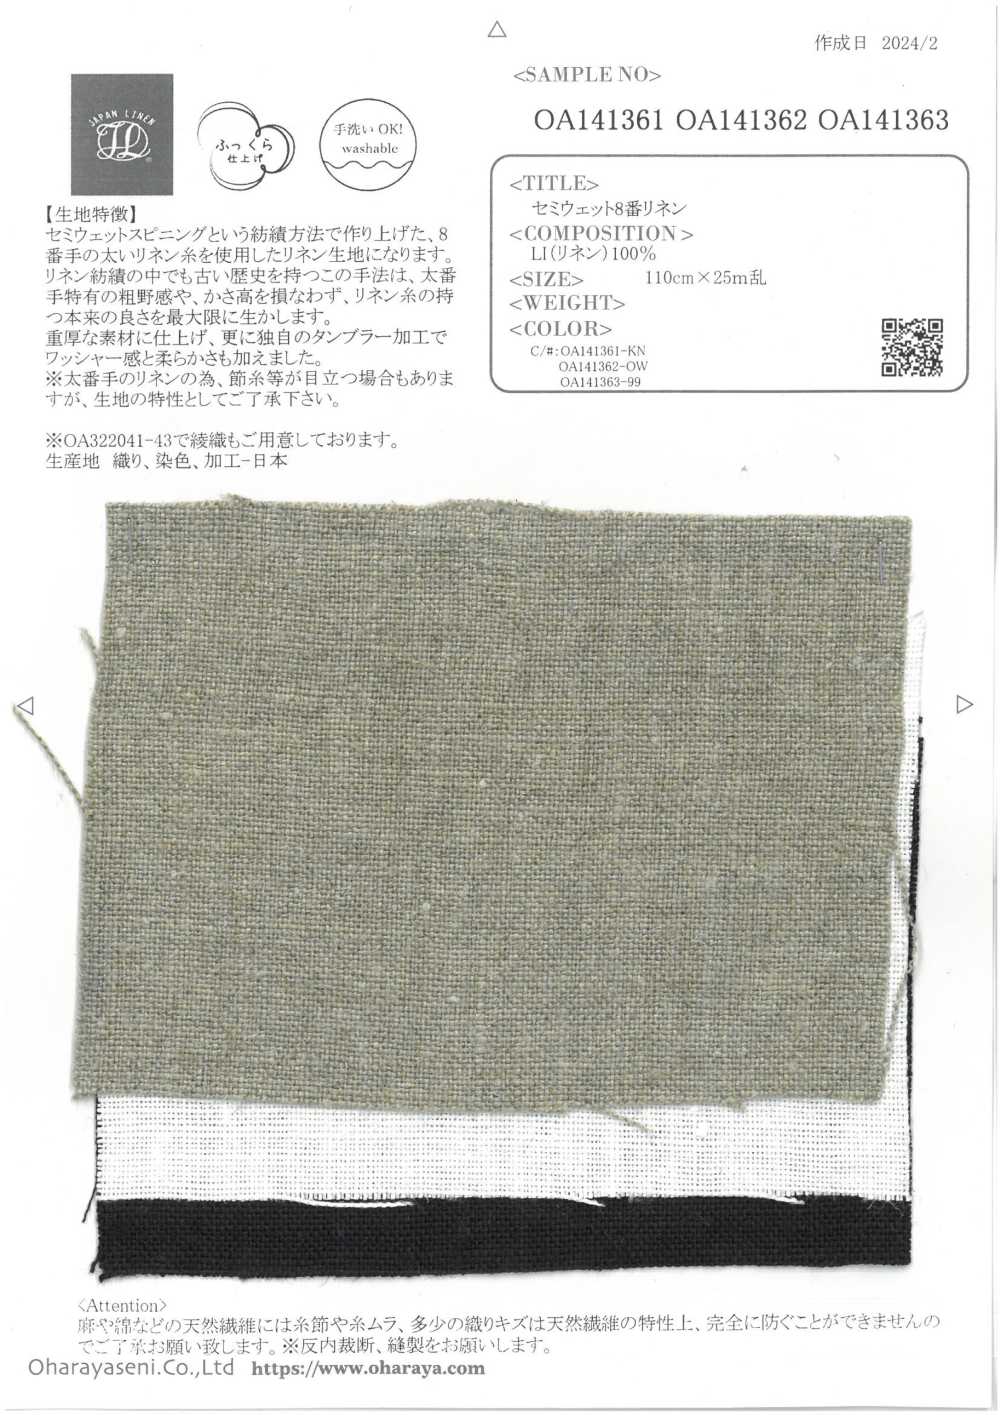 OA141362 Semi-wet No. 8 Linen[Textile / Fabric] Oharayaseni